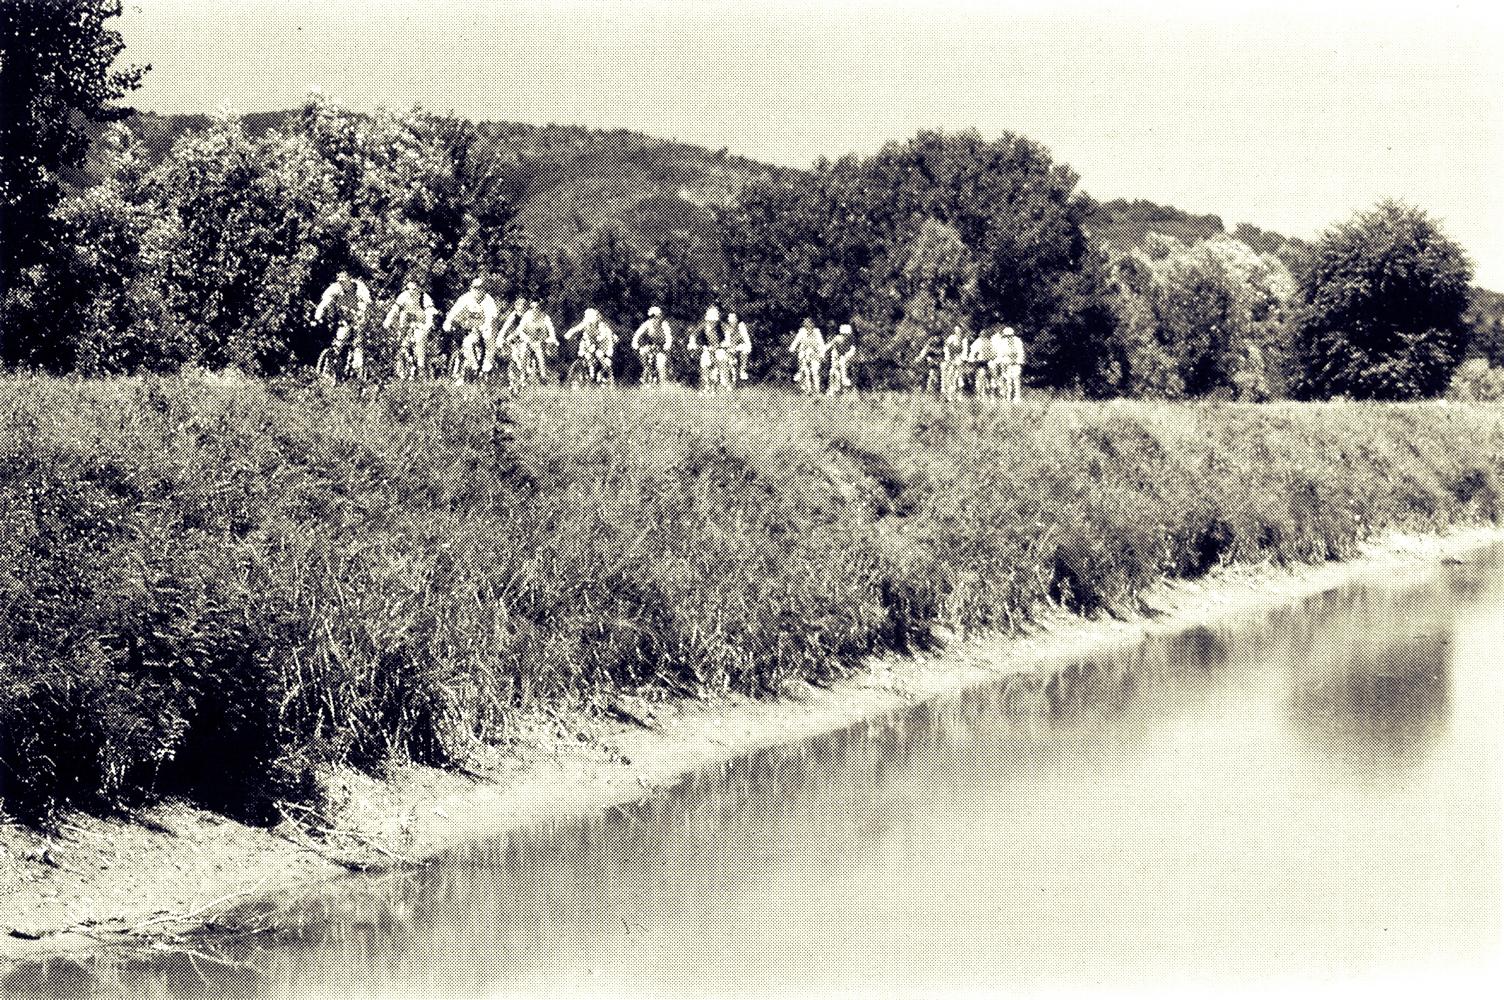 Percorso ecologico in bicicletta lungo il canale di Battaglia, nei pressi di Lispida.